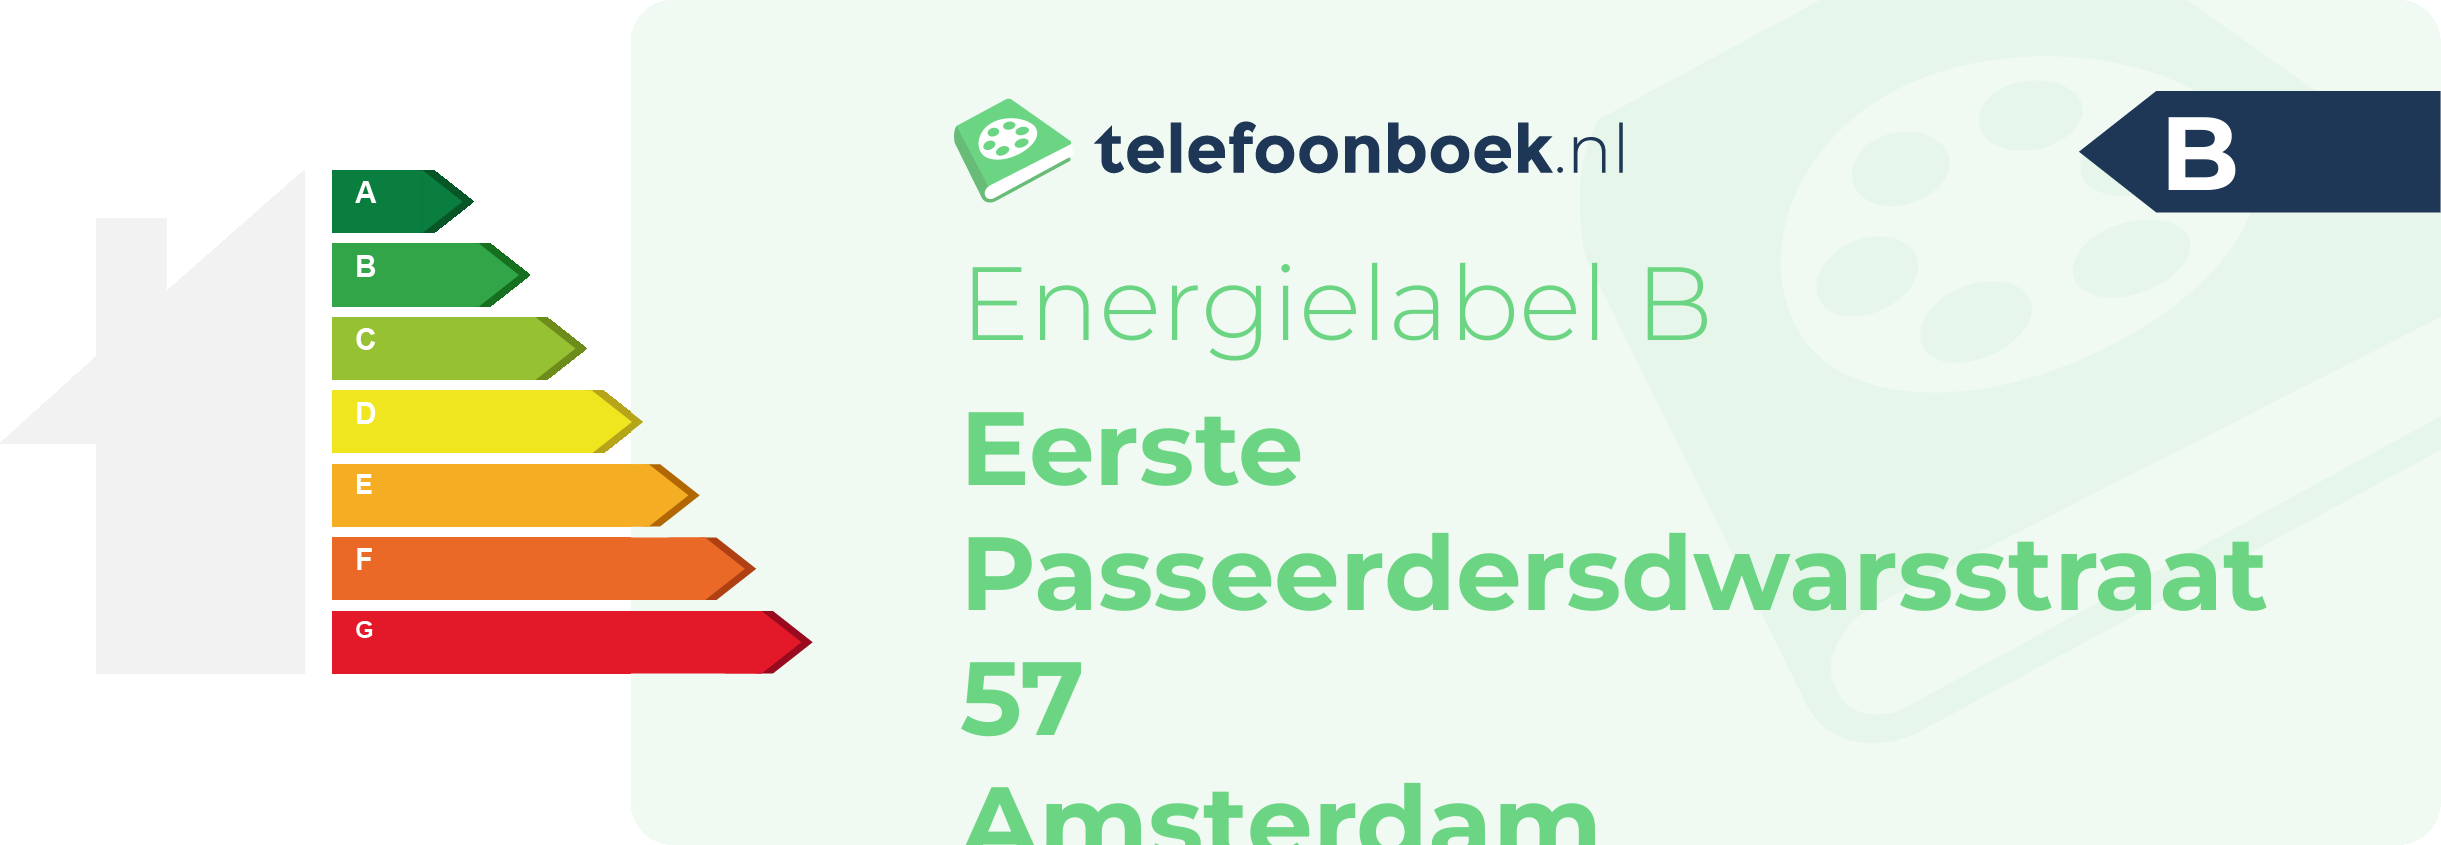 Energielabel Eerste Passeerdersdwarsstraat 57 Amsterdam